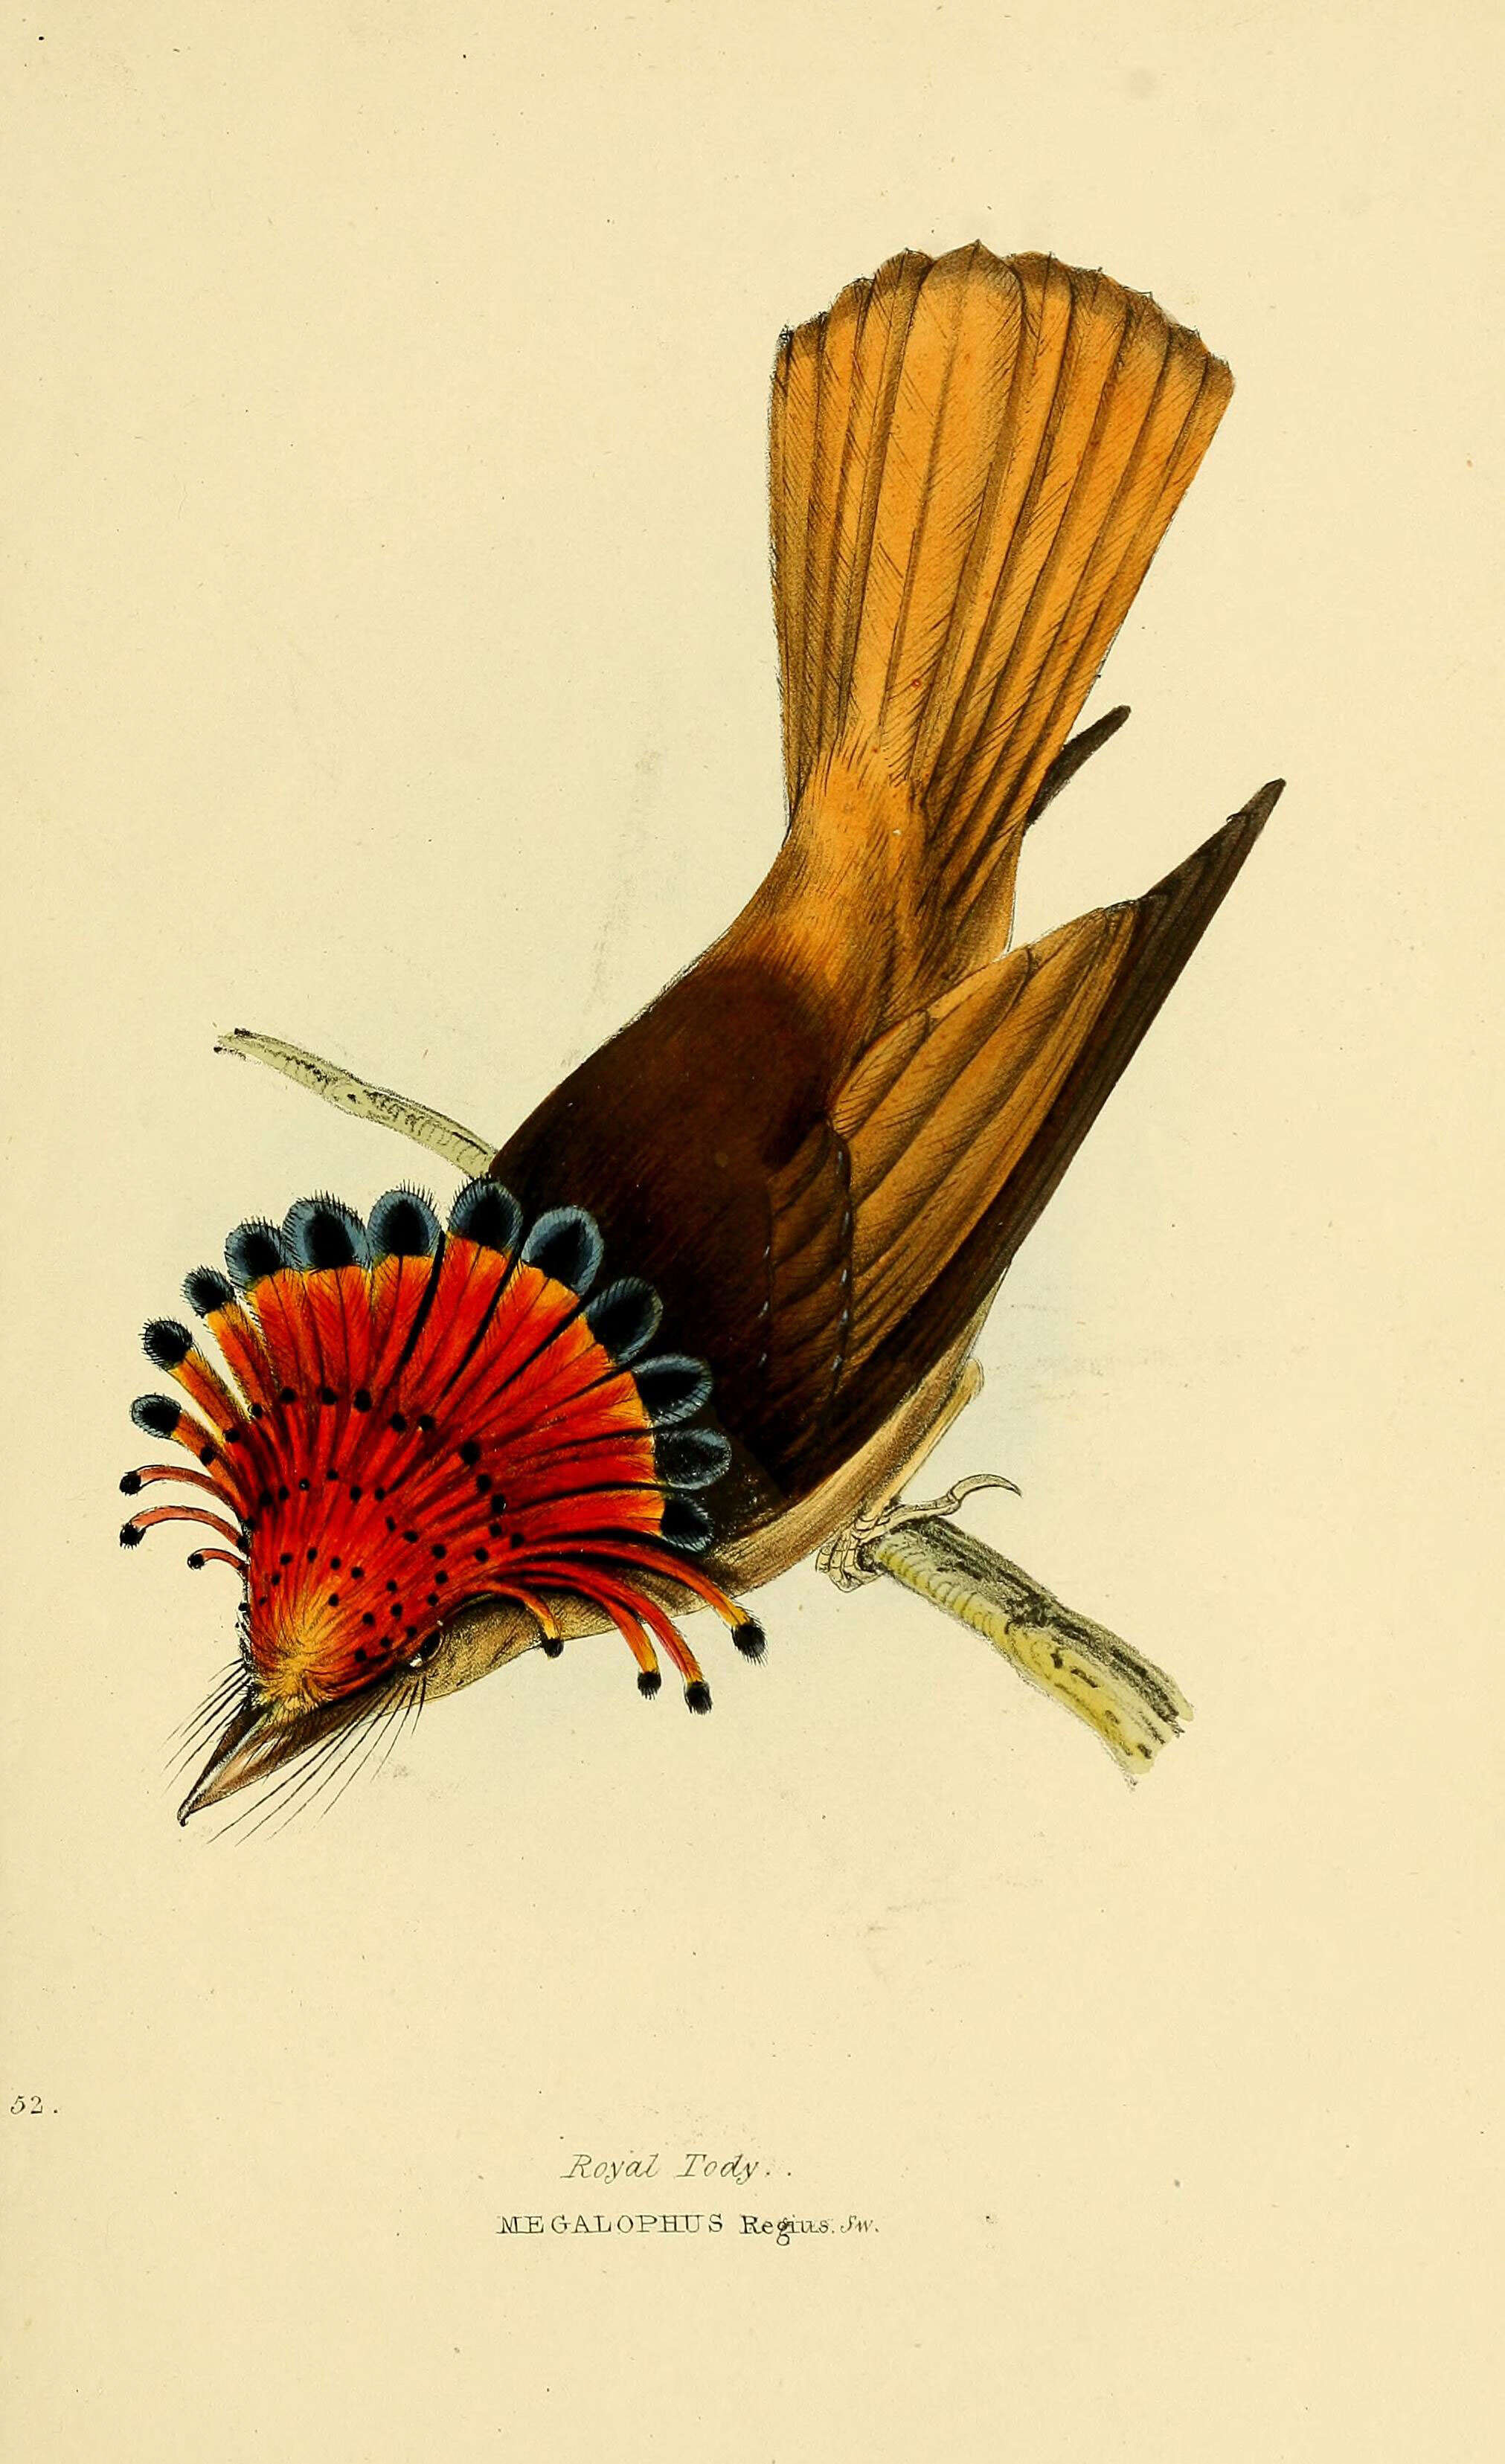 Image of royal flycatcher